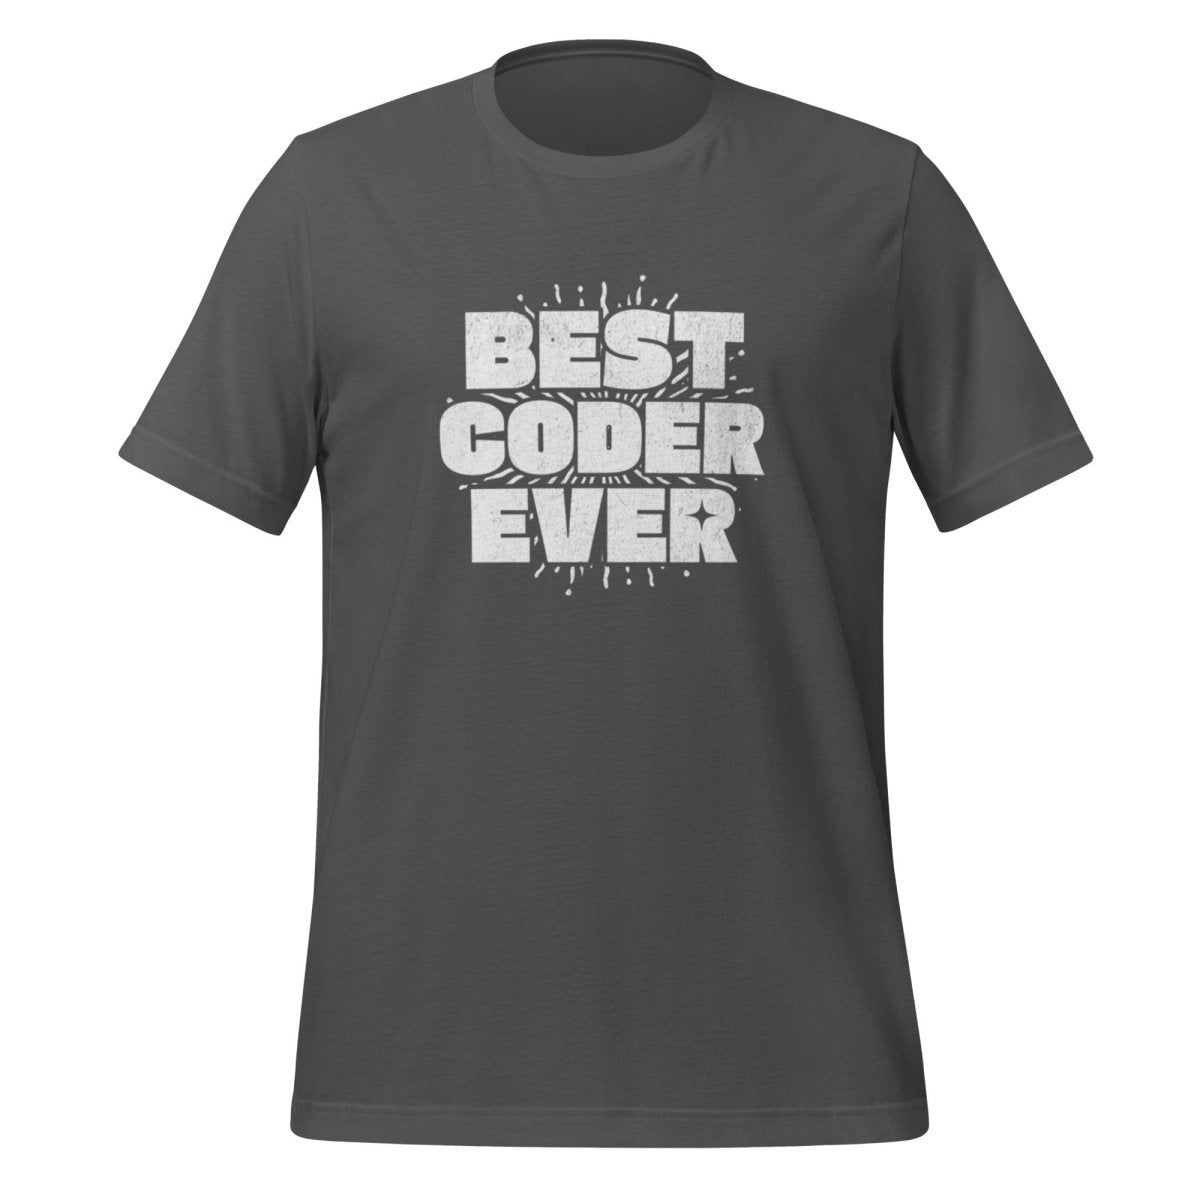 BEST CODER EVER T - Shirt (unisex) - Asphalt - AI Store